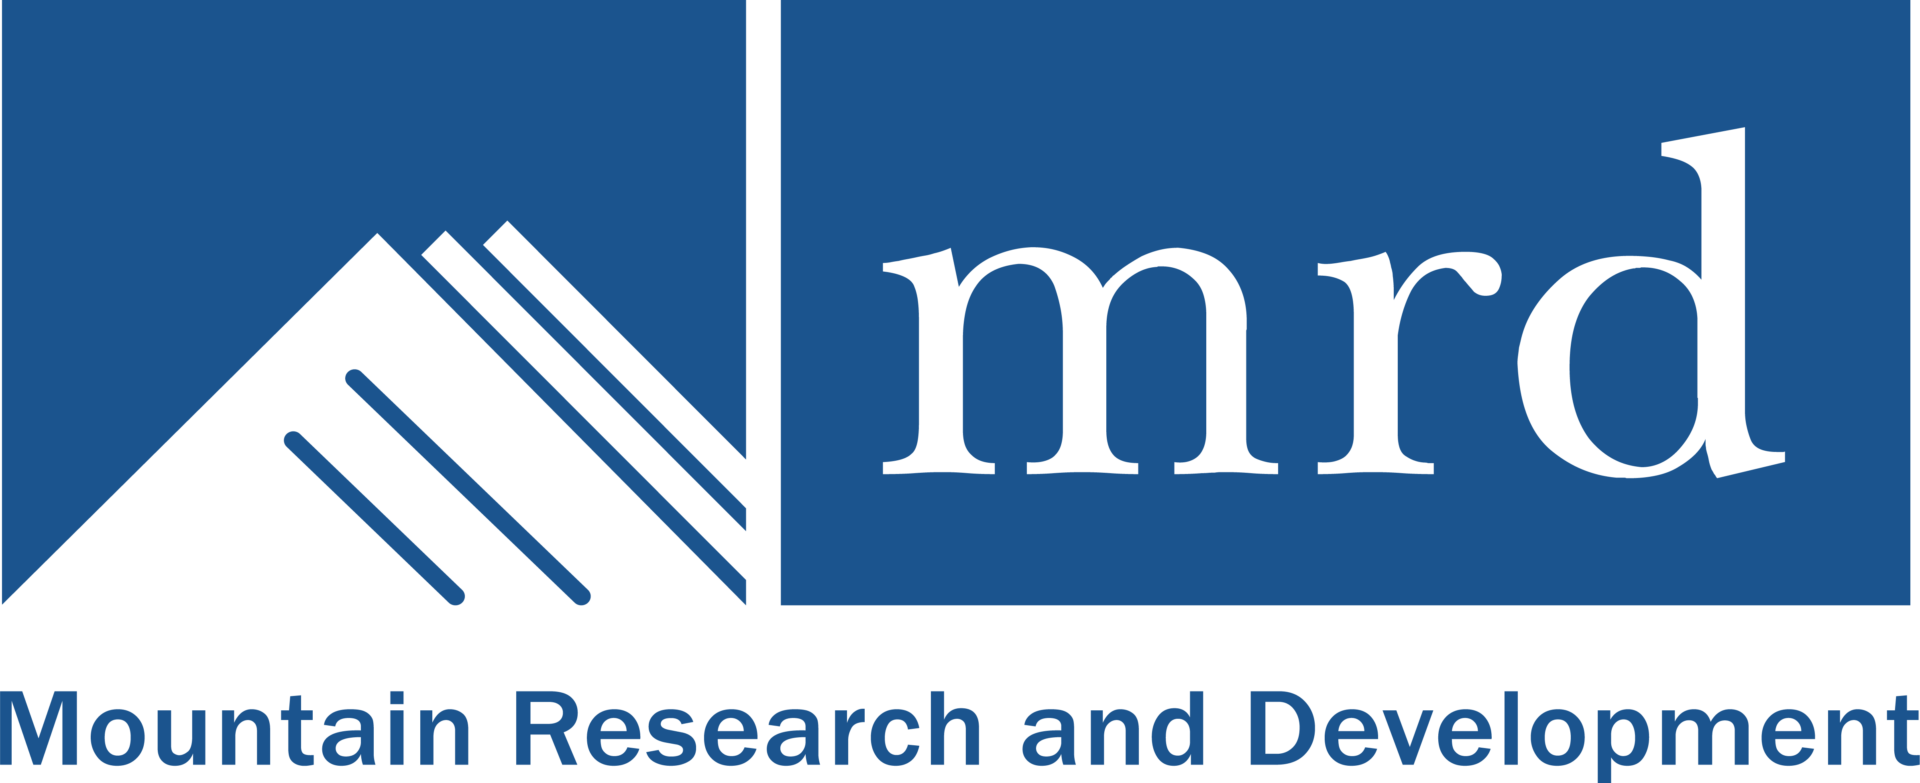 MRD logo